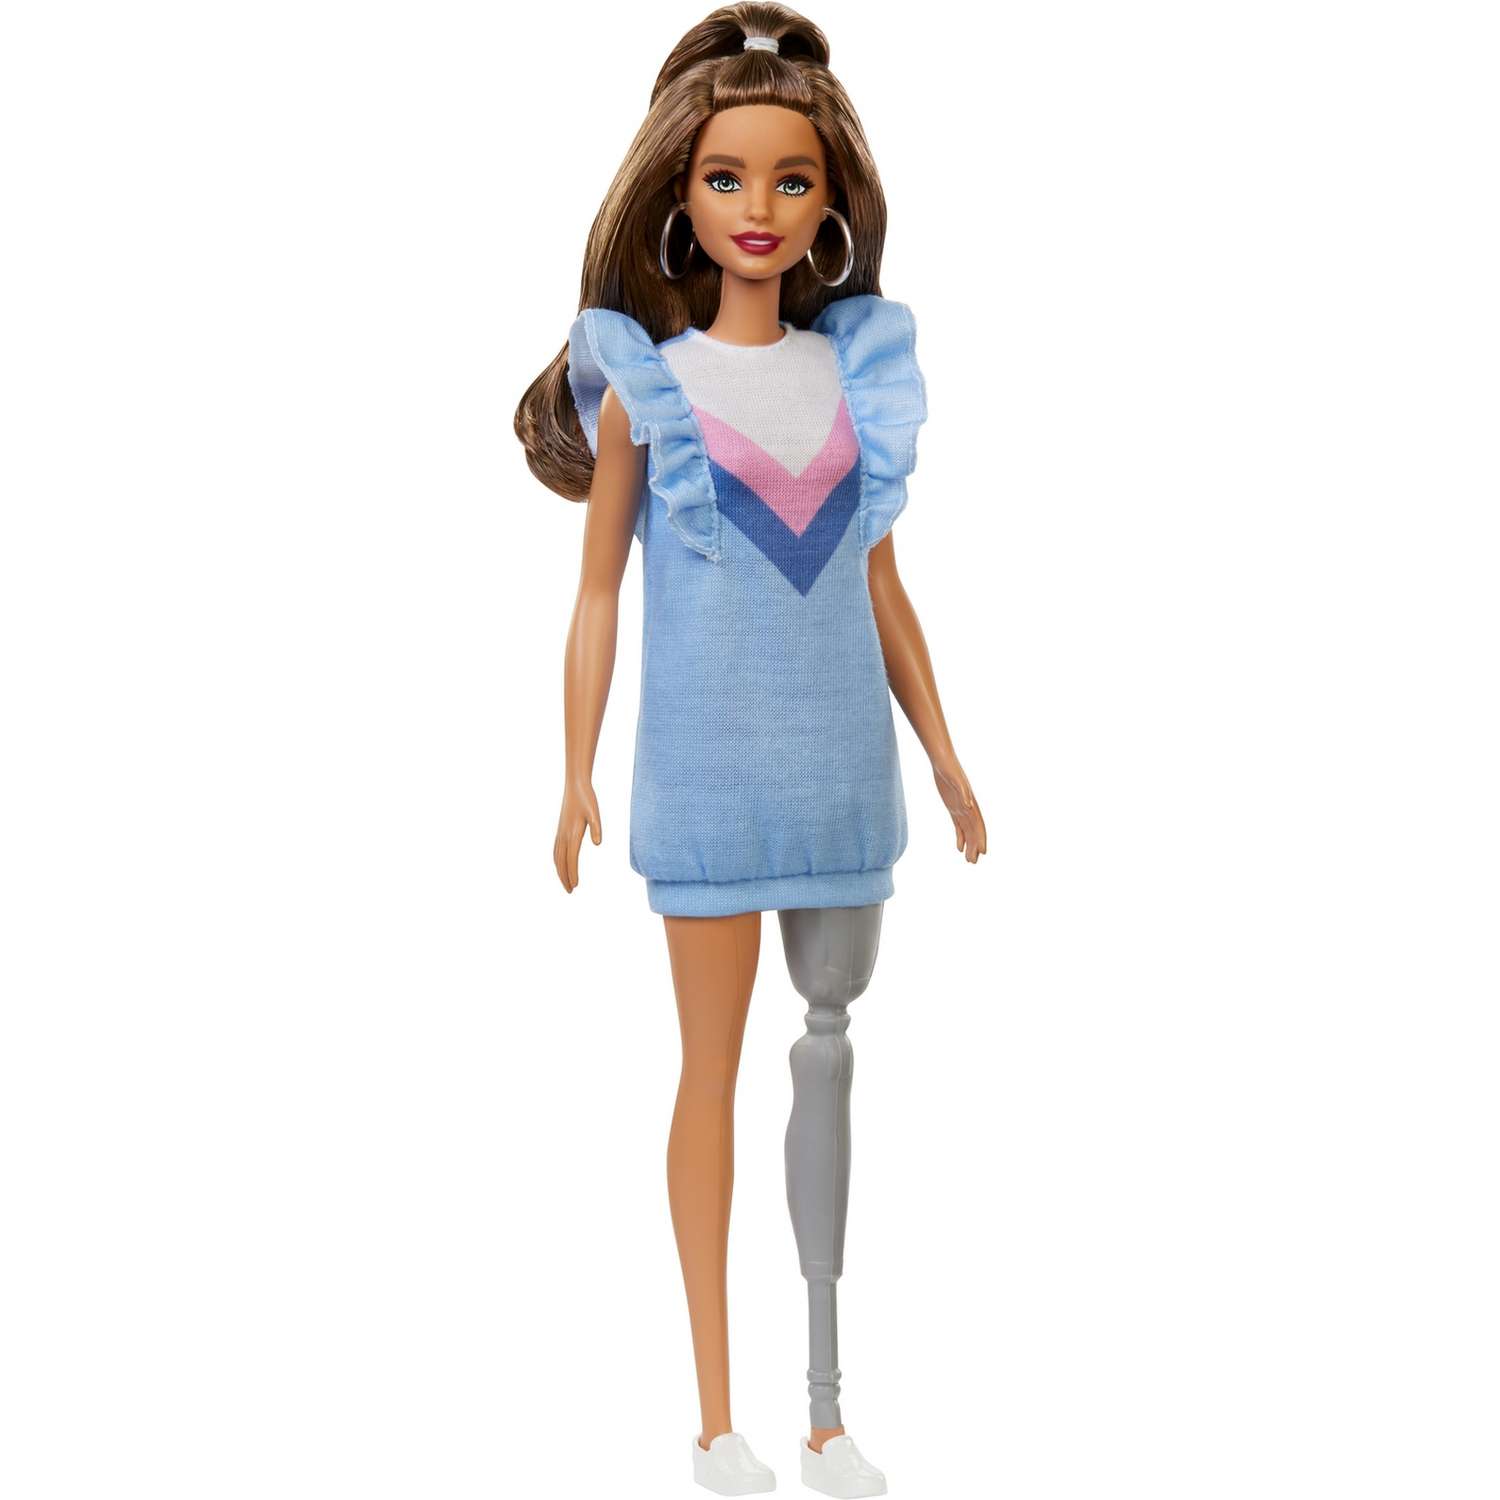 Кукла Barbie Игра с модой 121 Брюнетка с протезом в голубом платье FXL54 FBR37 - фото 1